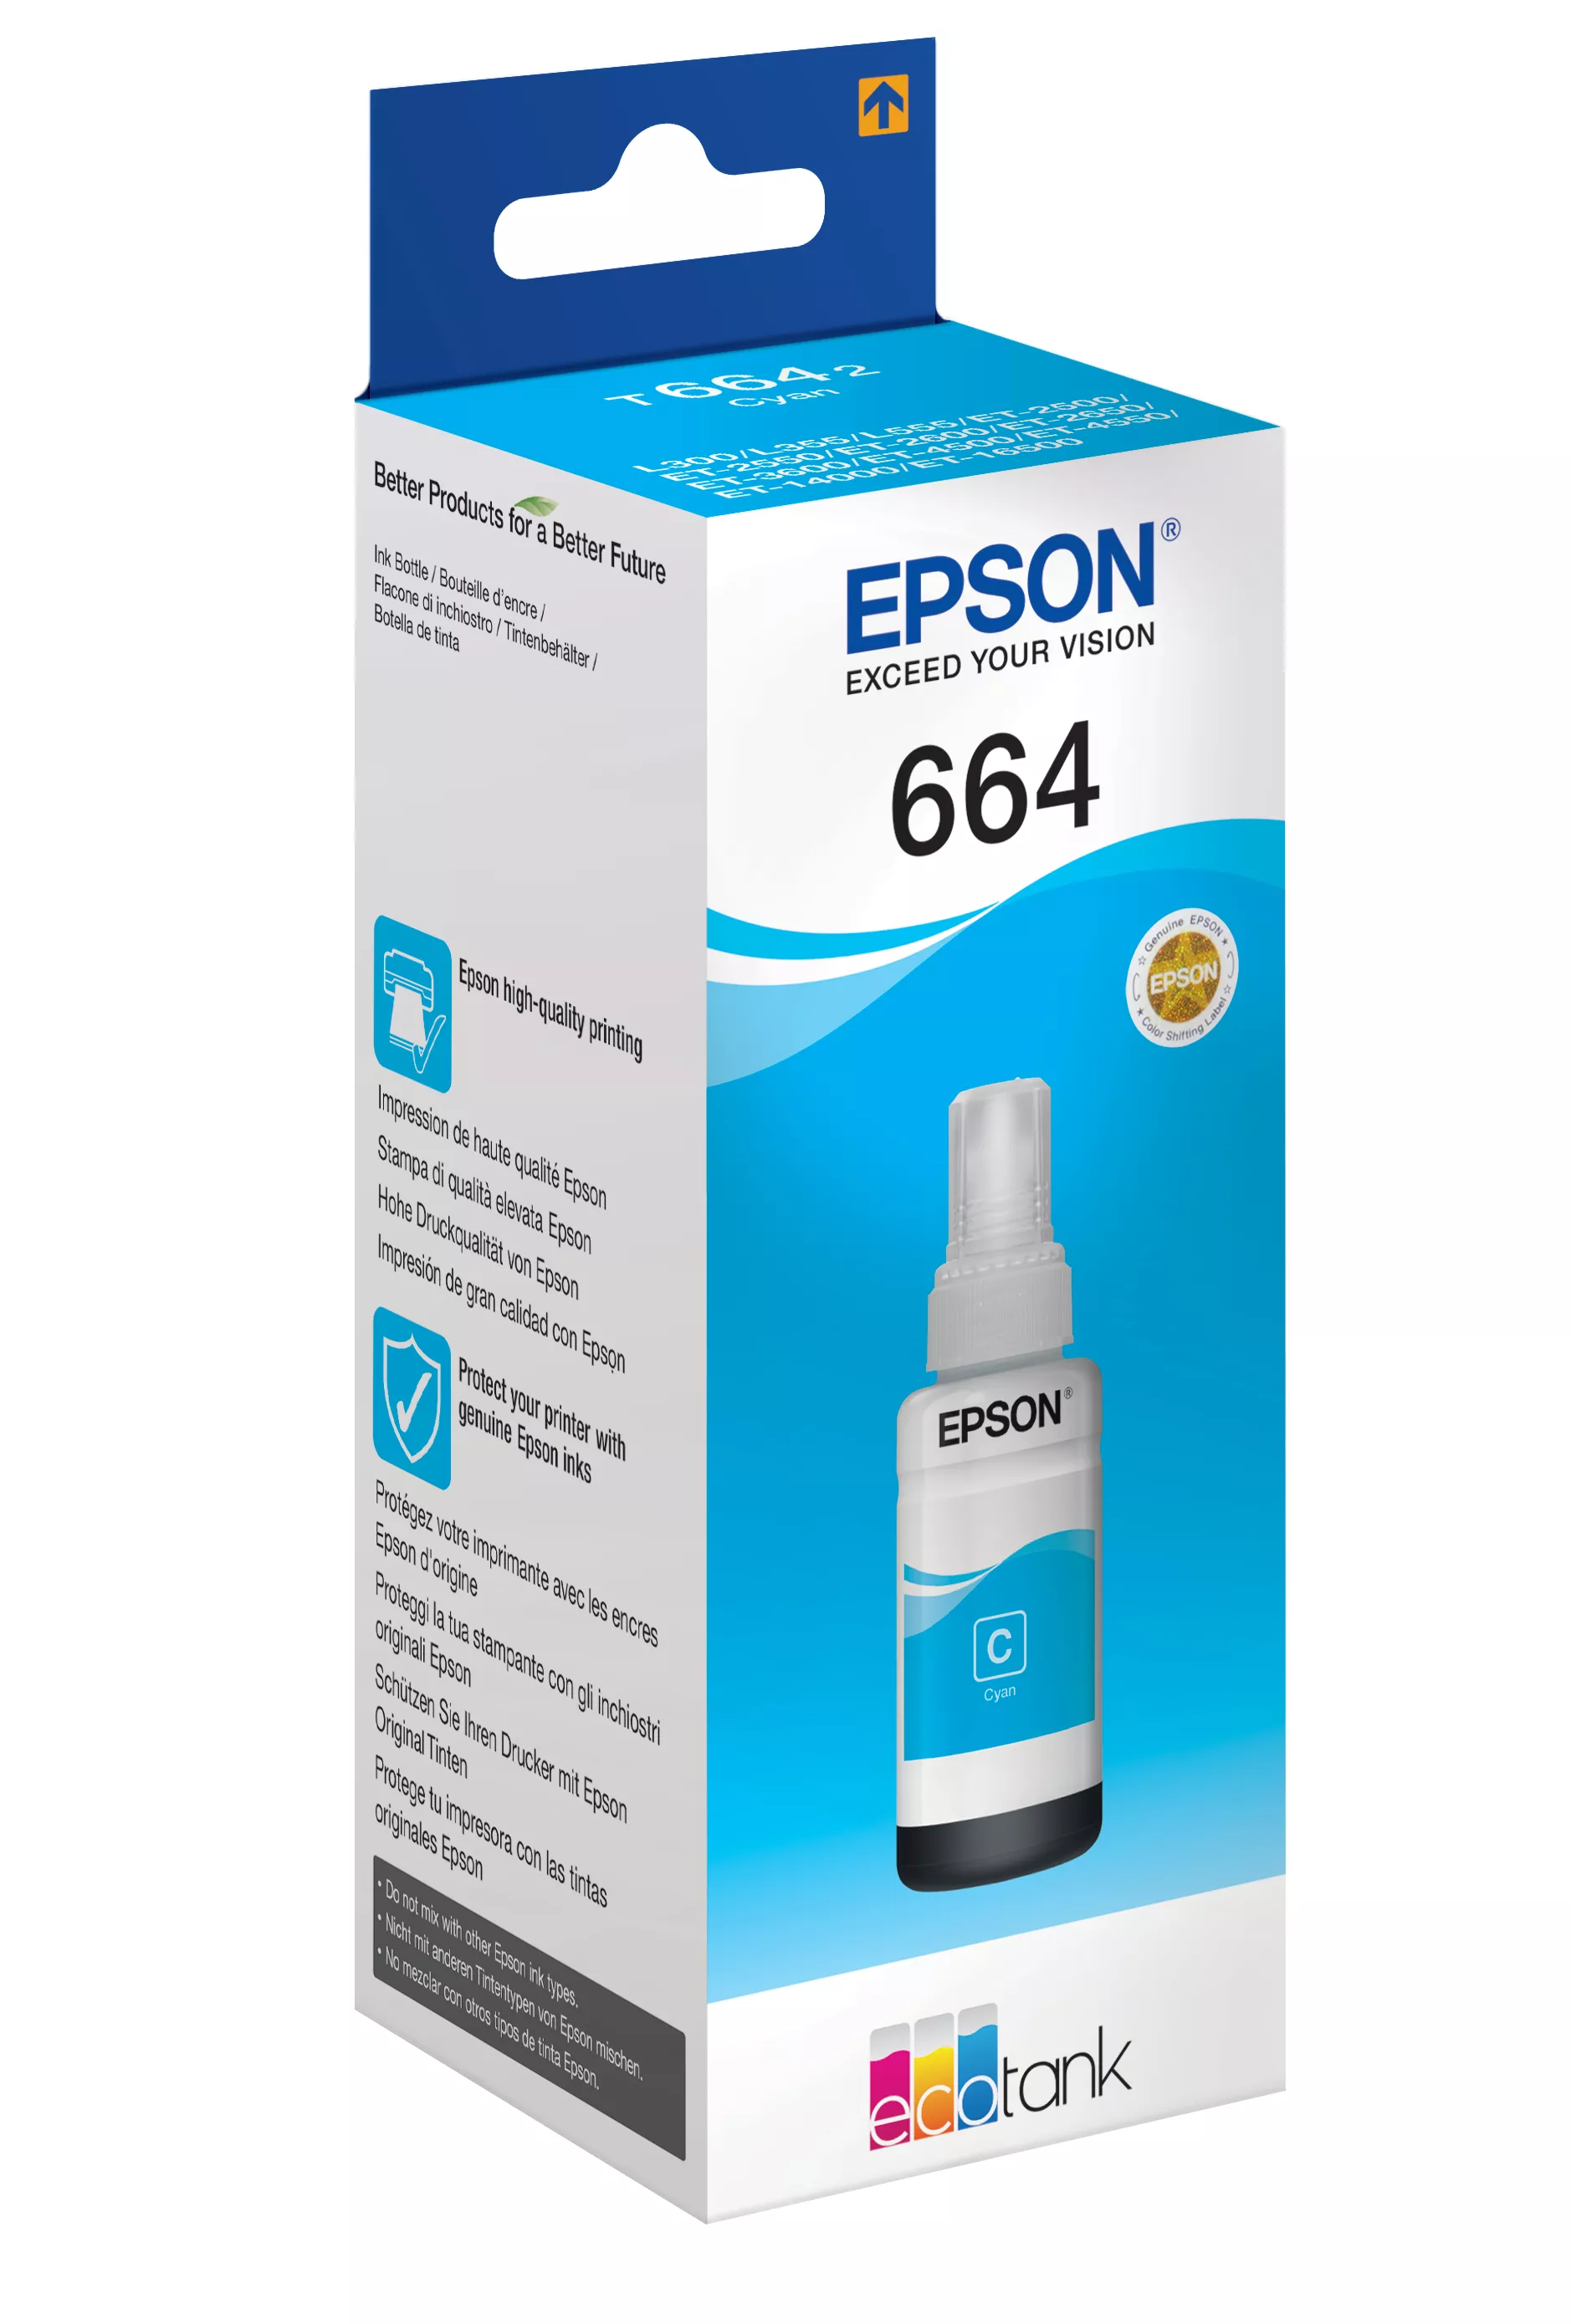 Vente EPSON T6642 cartouche d encre cyan 70ml pack Epson au meilleur prix - visuel 2